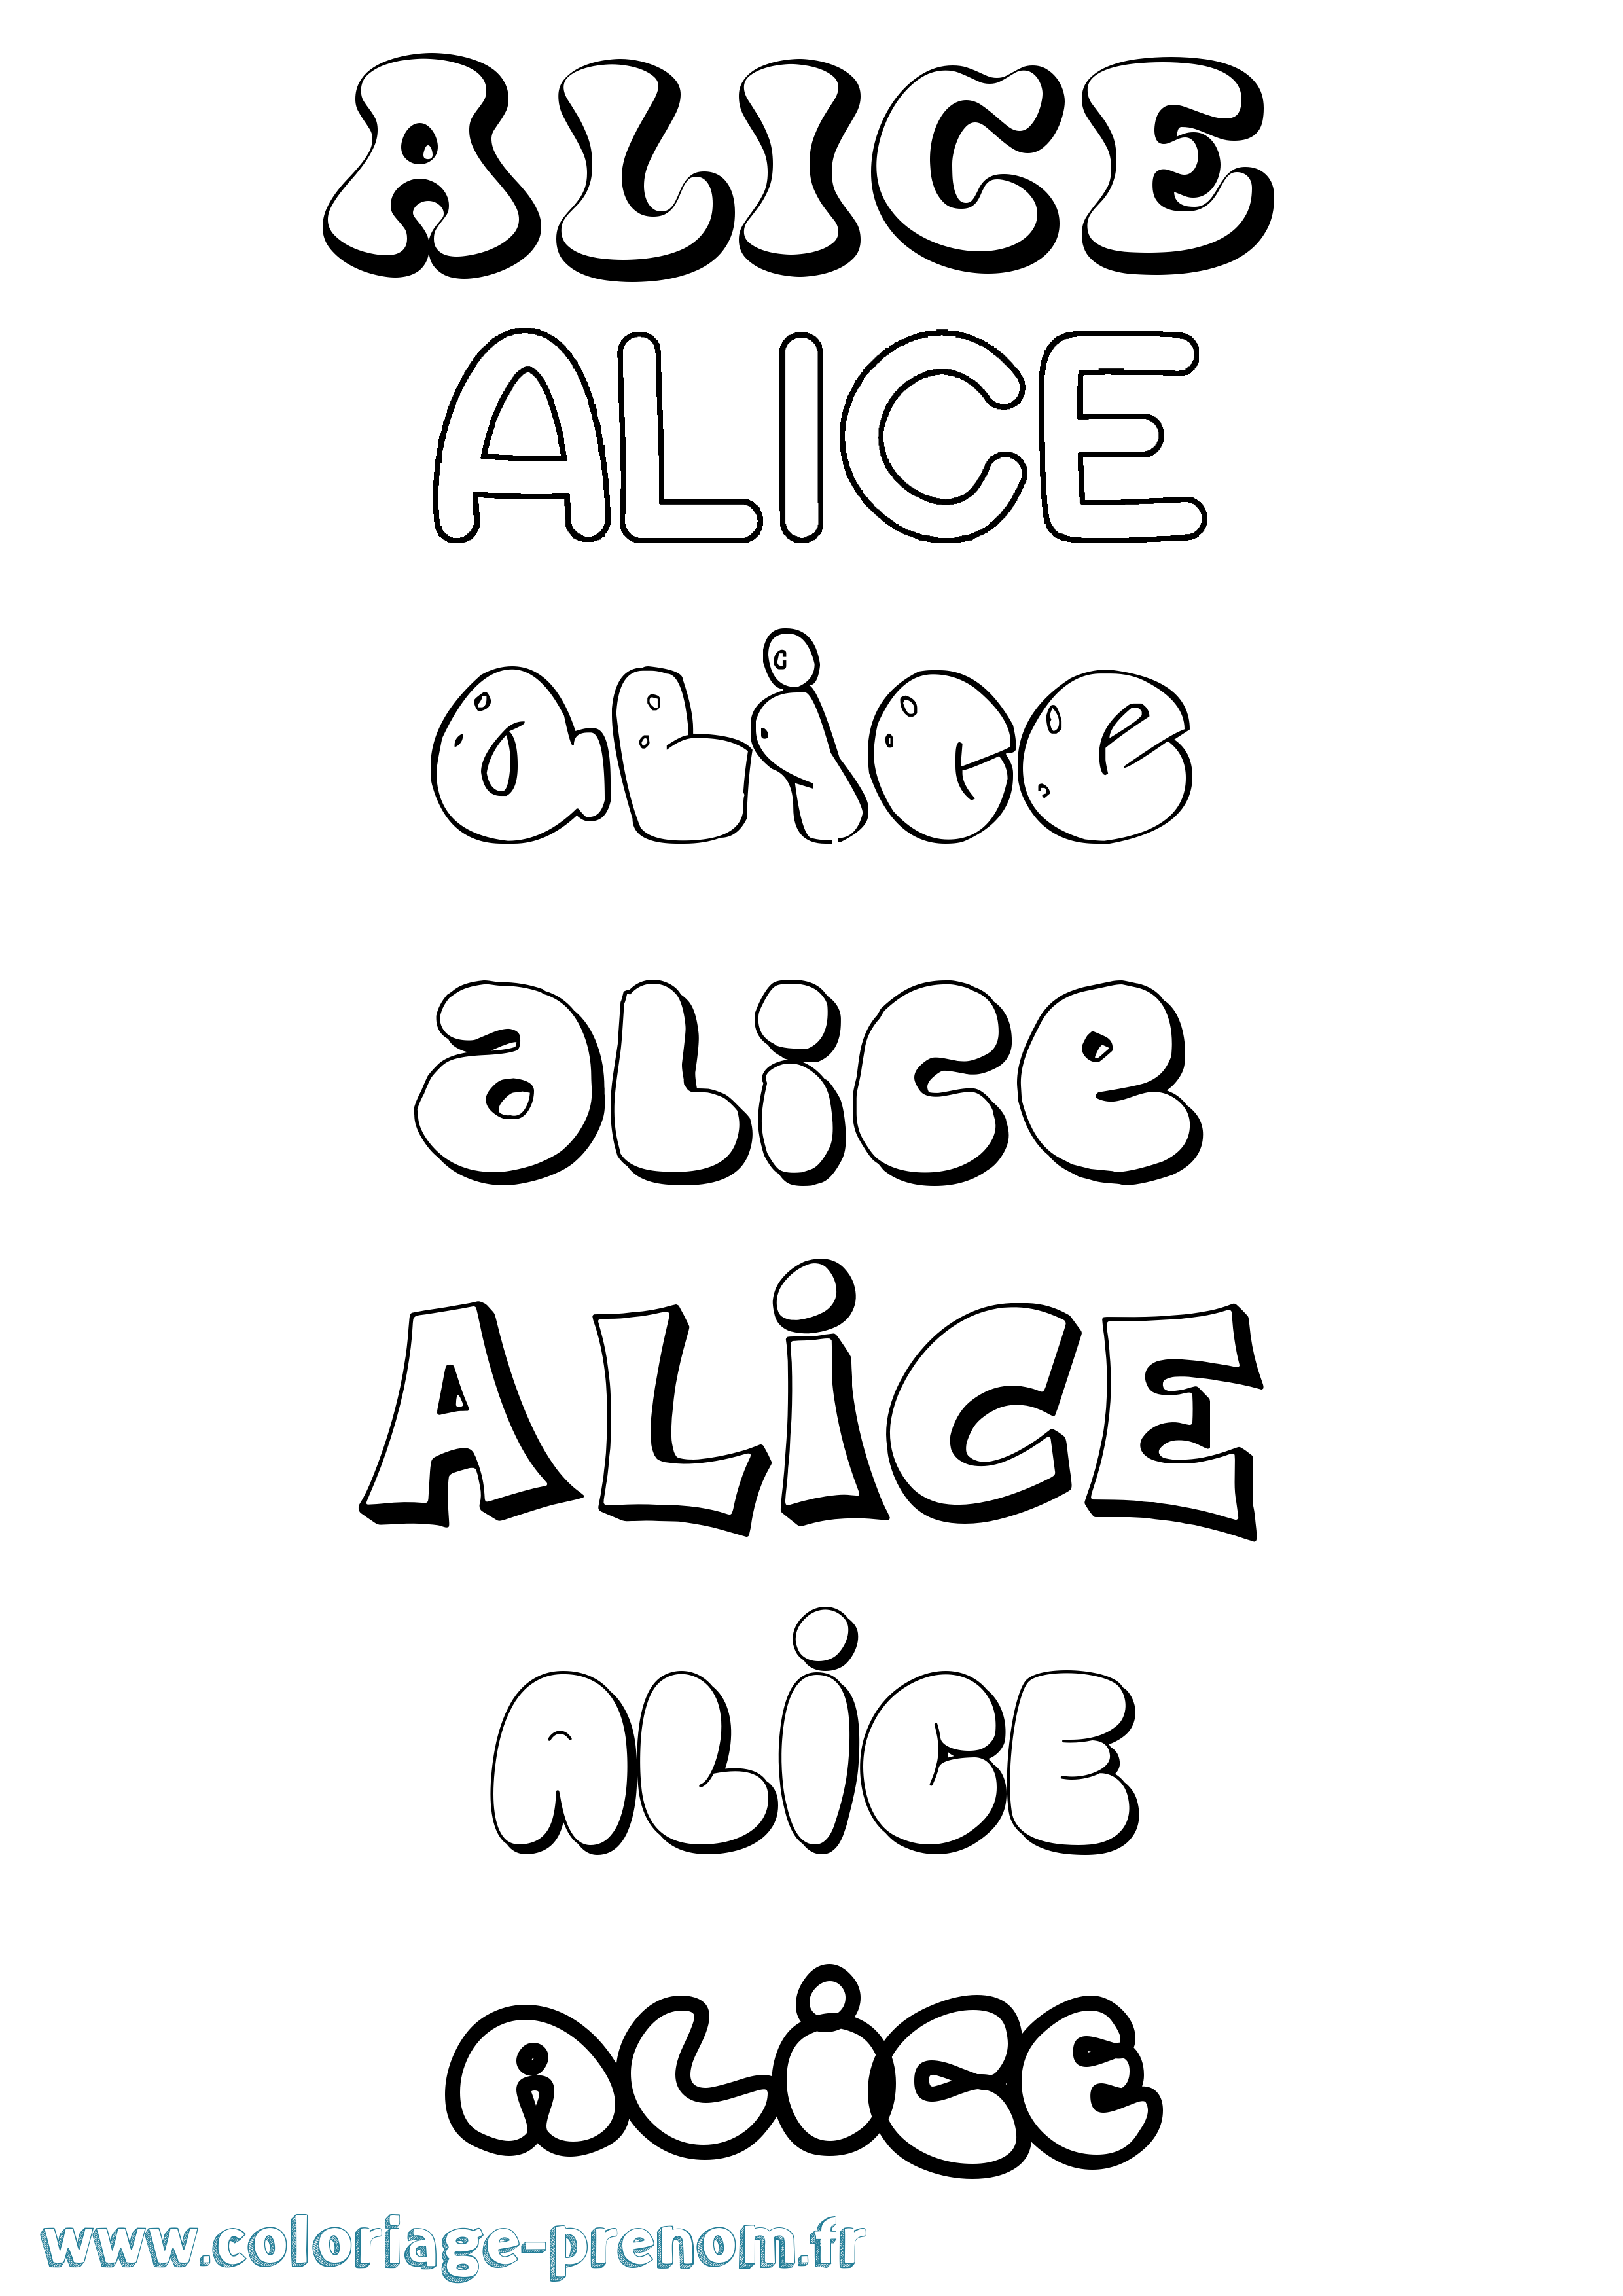 Coloriage prénom Alice